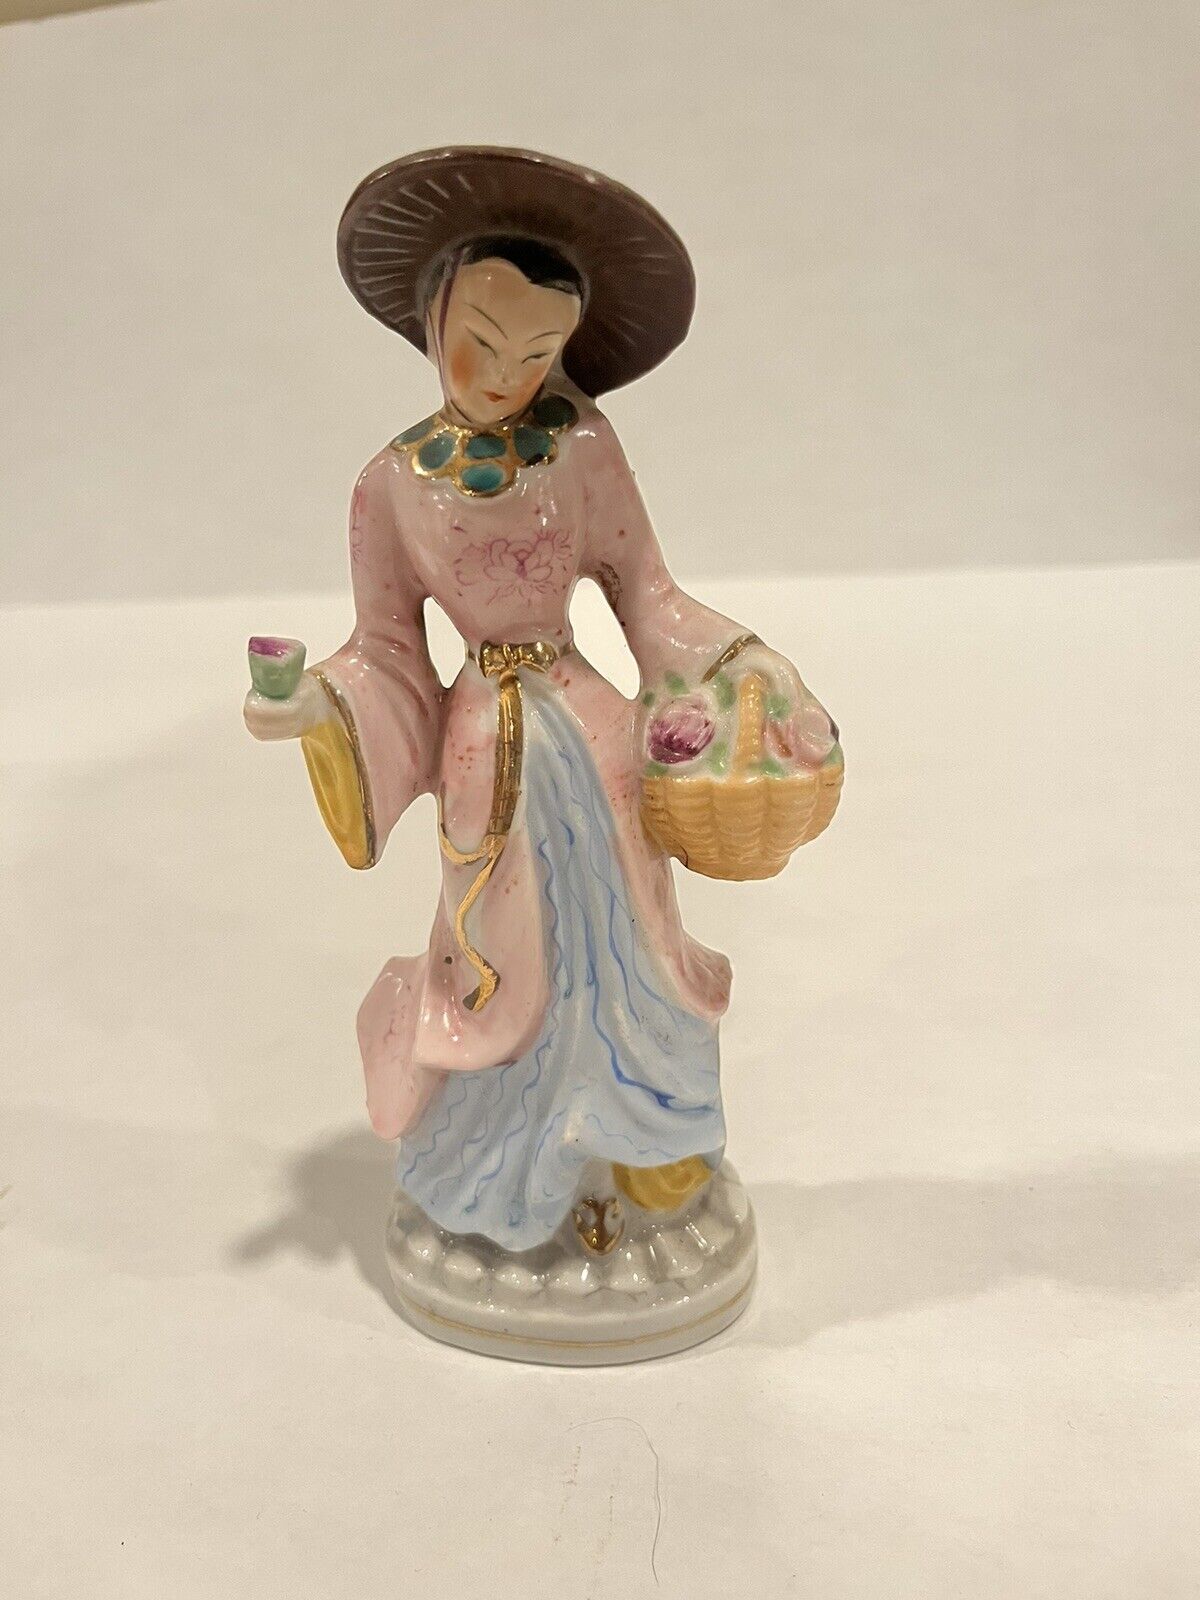 Vintage Made in Japan Women Figurine